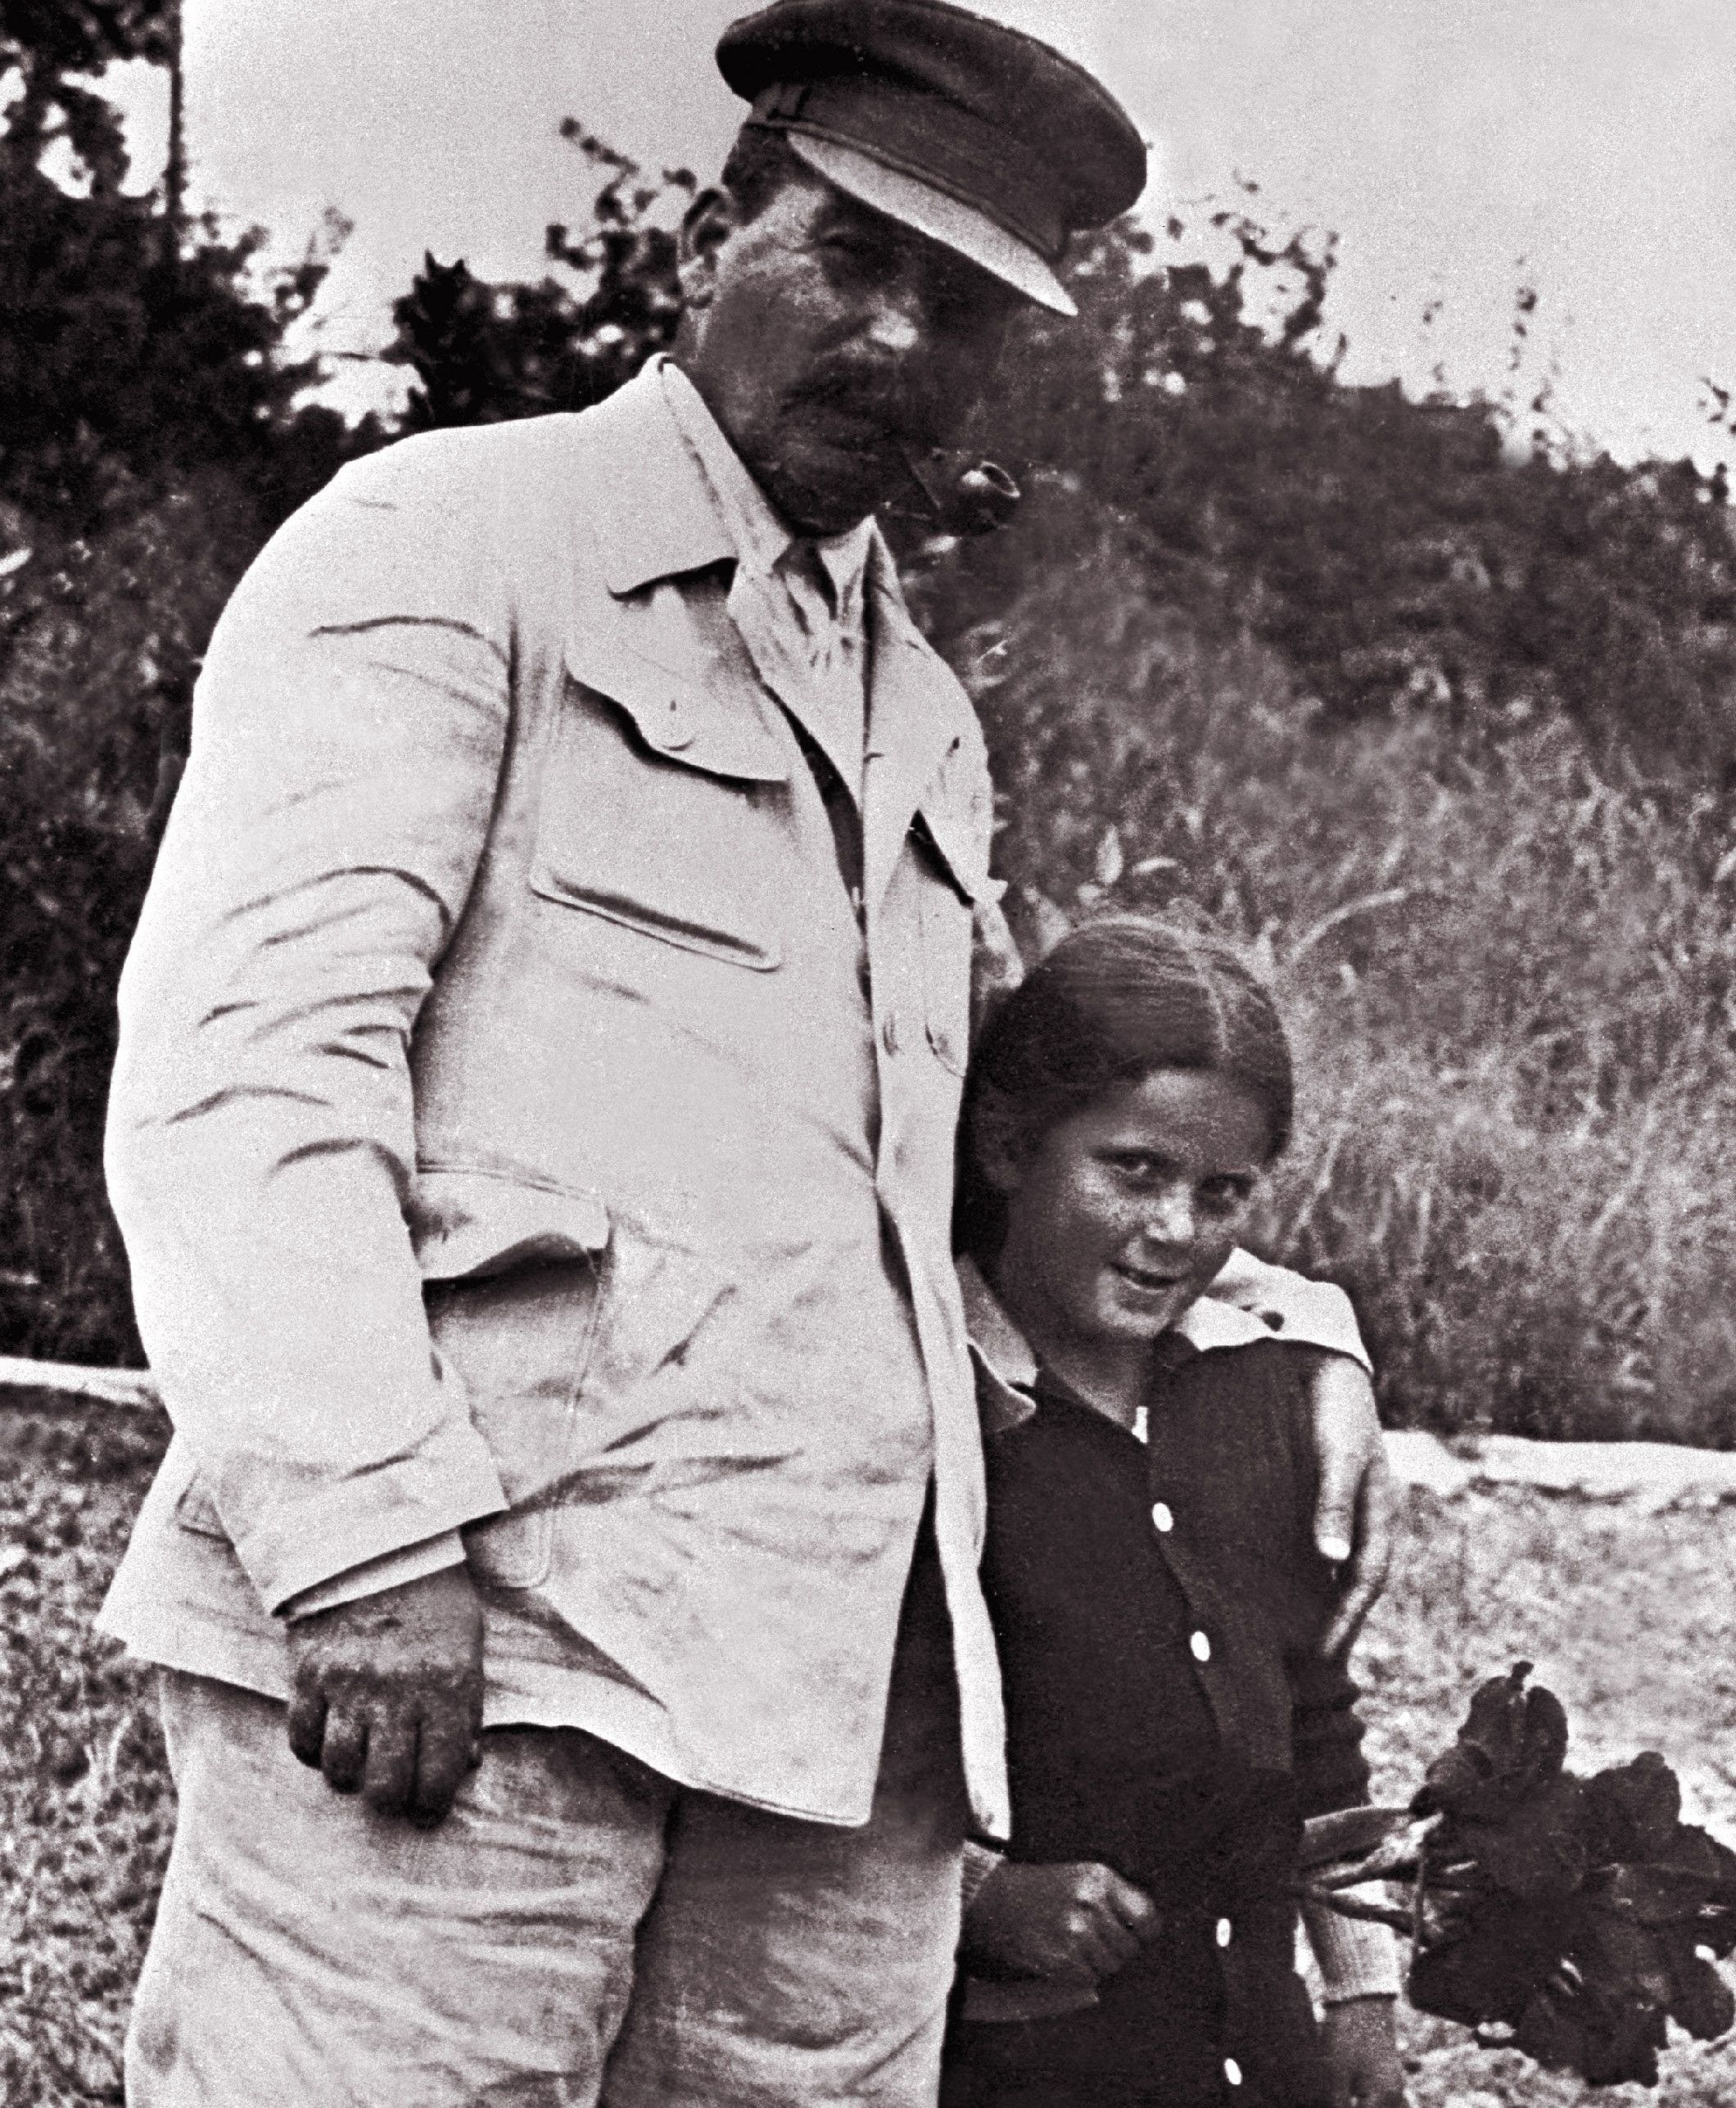 Wróbelek i papoczka na spacerze. Zdjęcie, wykonane w 1933 roku, pochodzi z materiałów promocyjnych książki Rosemary Sullivan pod tytułem "Córka Stalina", wydanej przez Znak Horyzont (źródło:EAST NEWS/LASKI DIFFUSION).